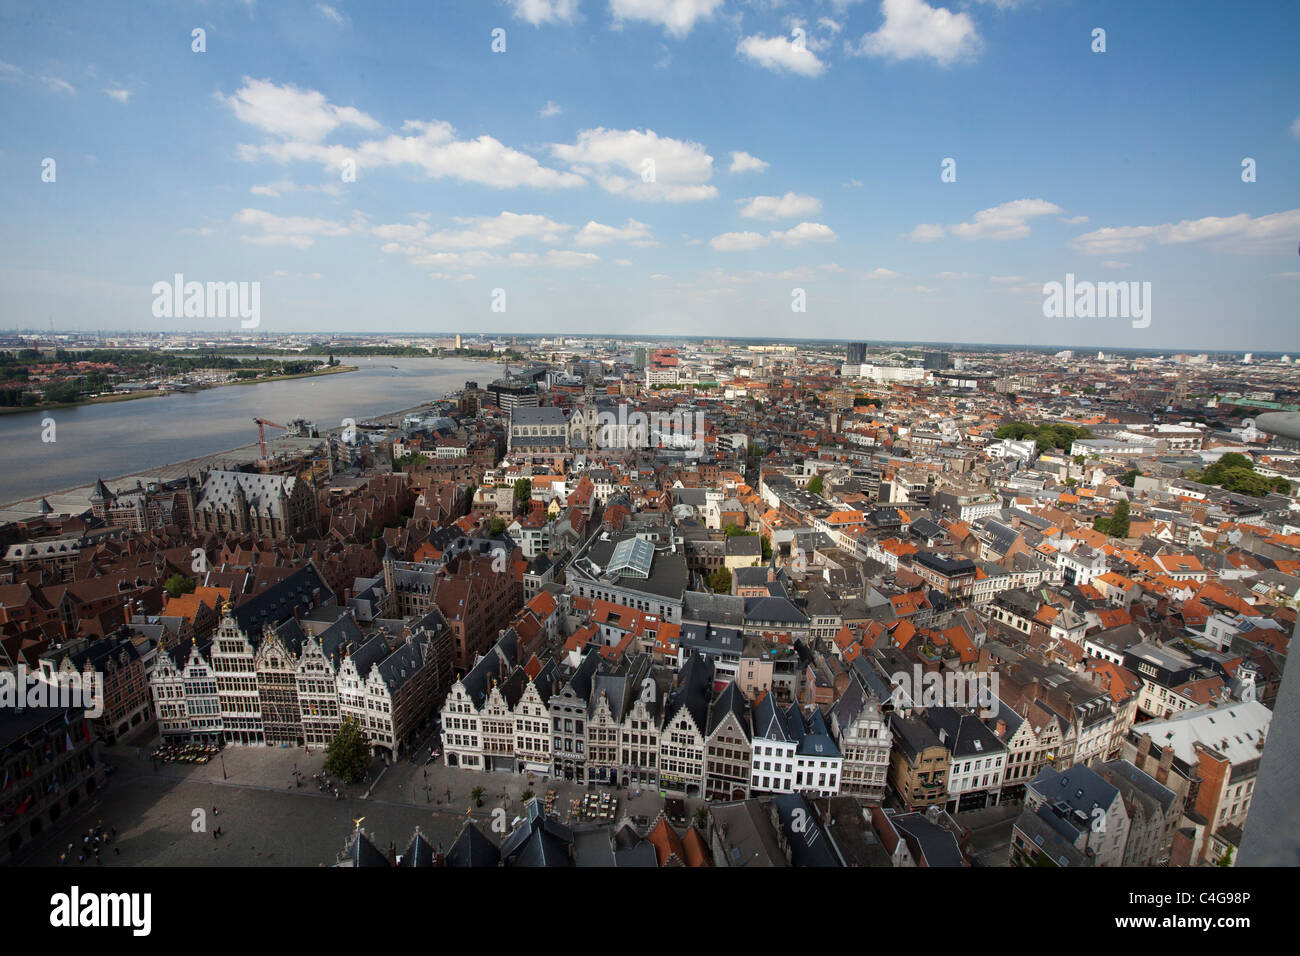 Antwerpen von Sky - Blick auf die Stadt Antwerpen anzeigen Stockfoto